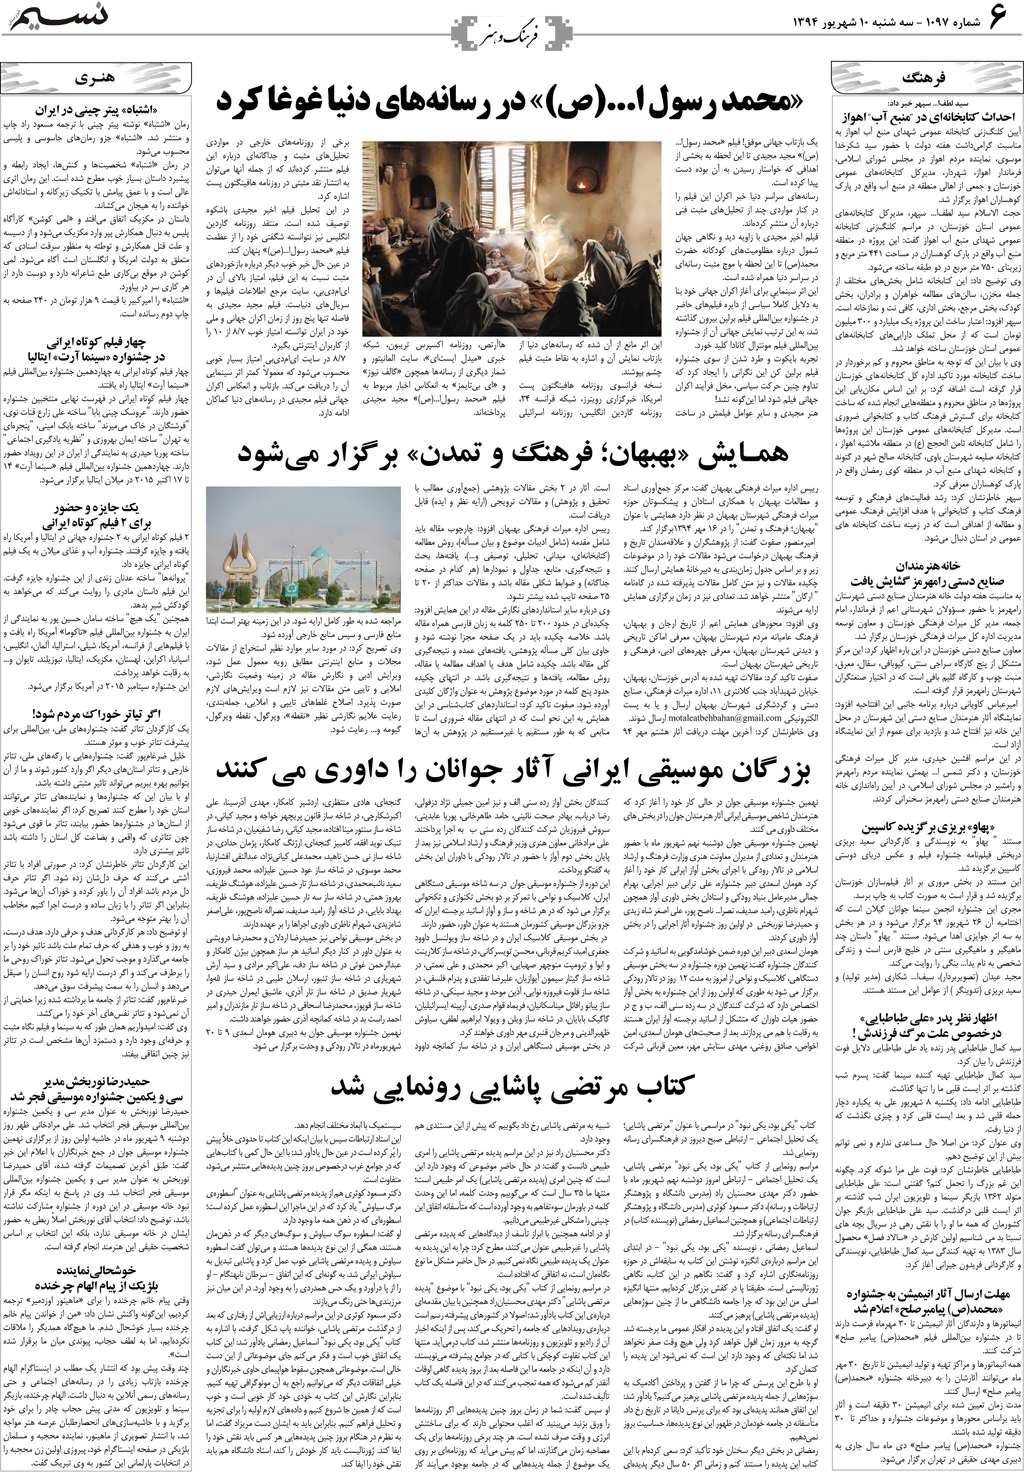 صفحه فرهنگ و هنر روزنامه نسیم شماره 1097